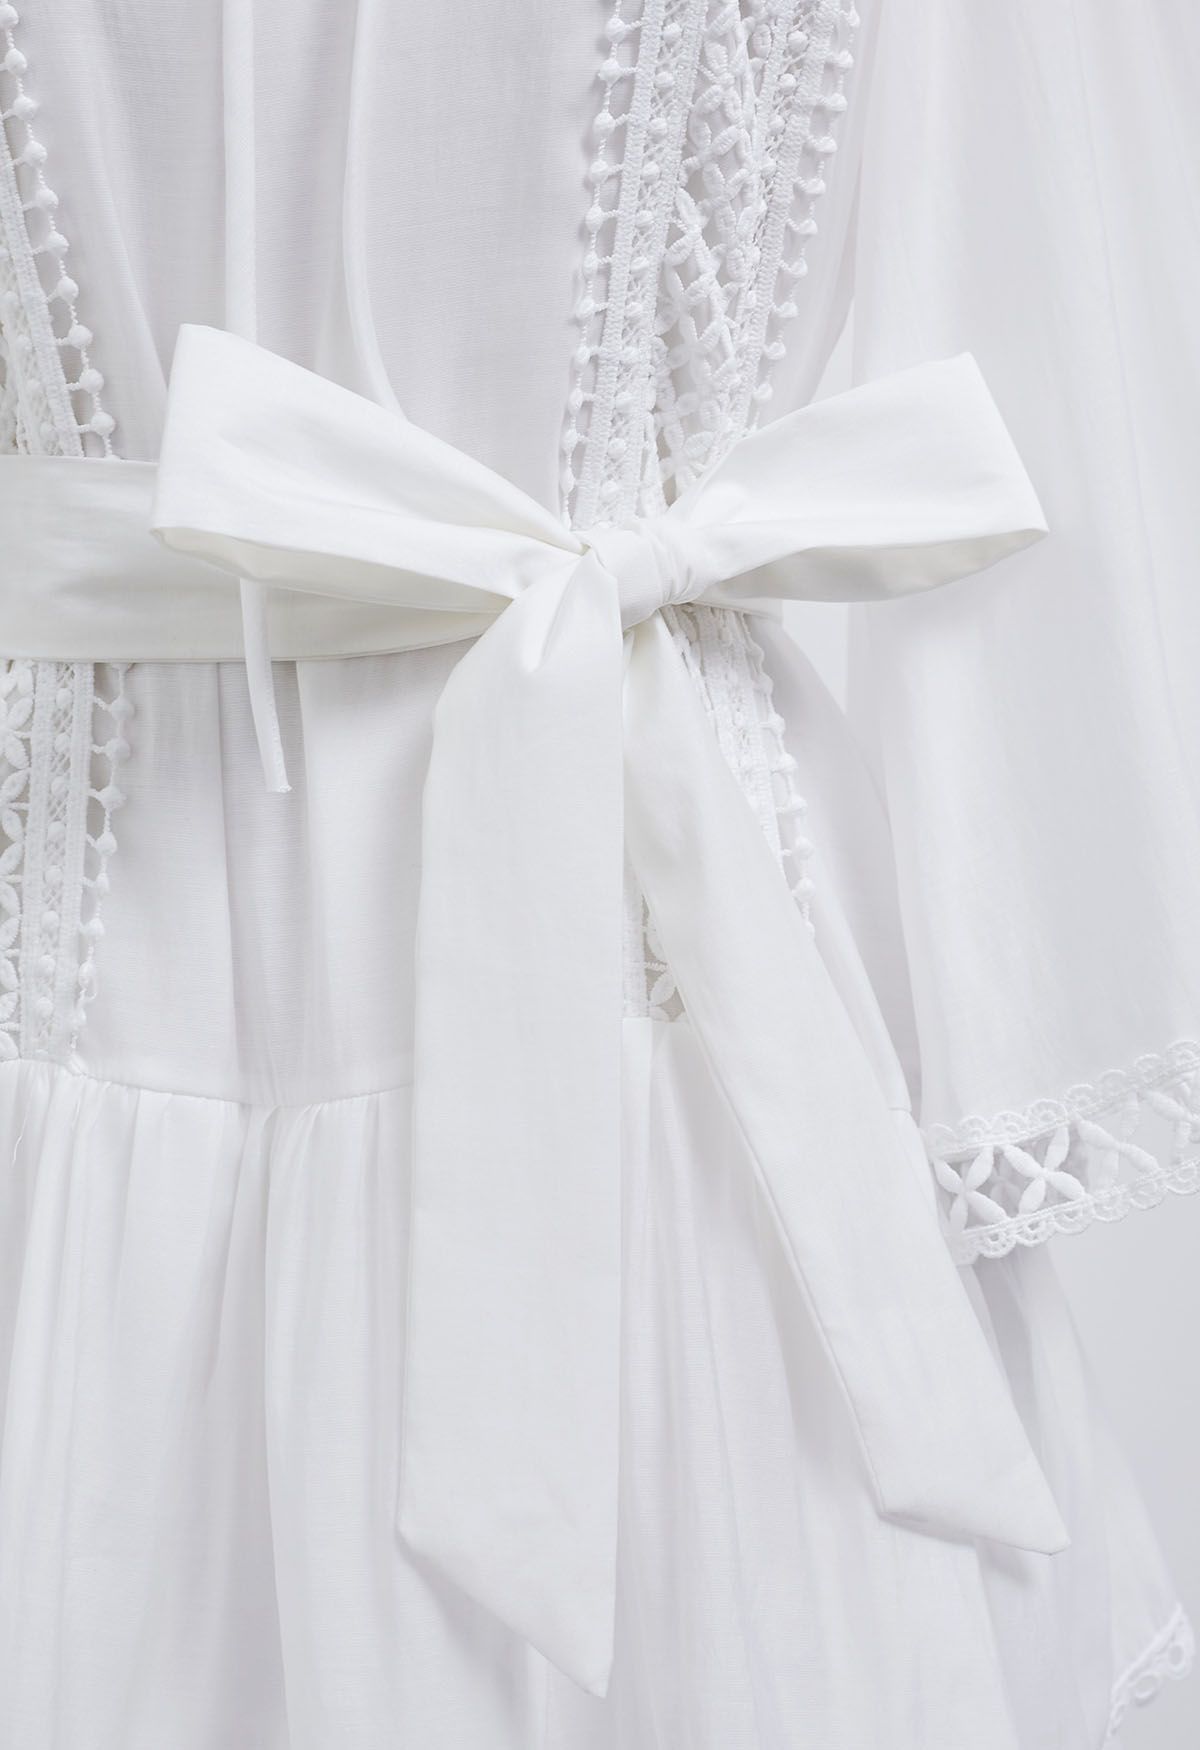 Gestuftes Kleid mit Cutwork-Besatz und ausgestellten Ärmeln in Weiß